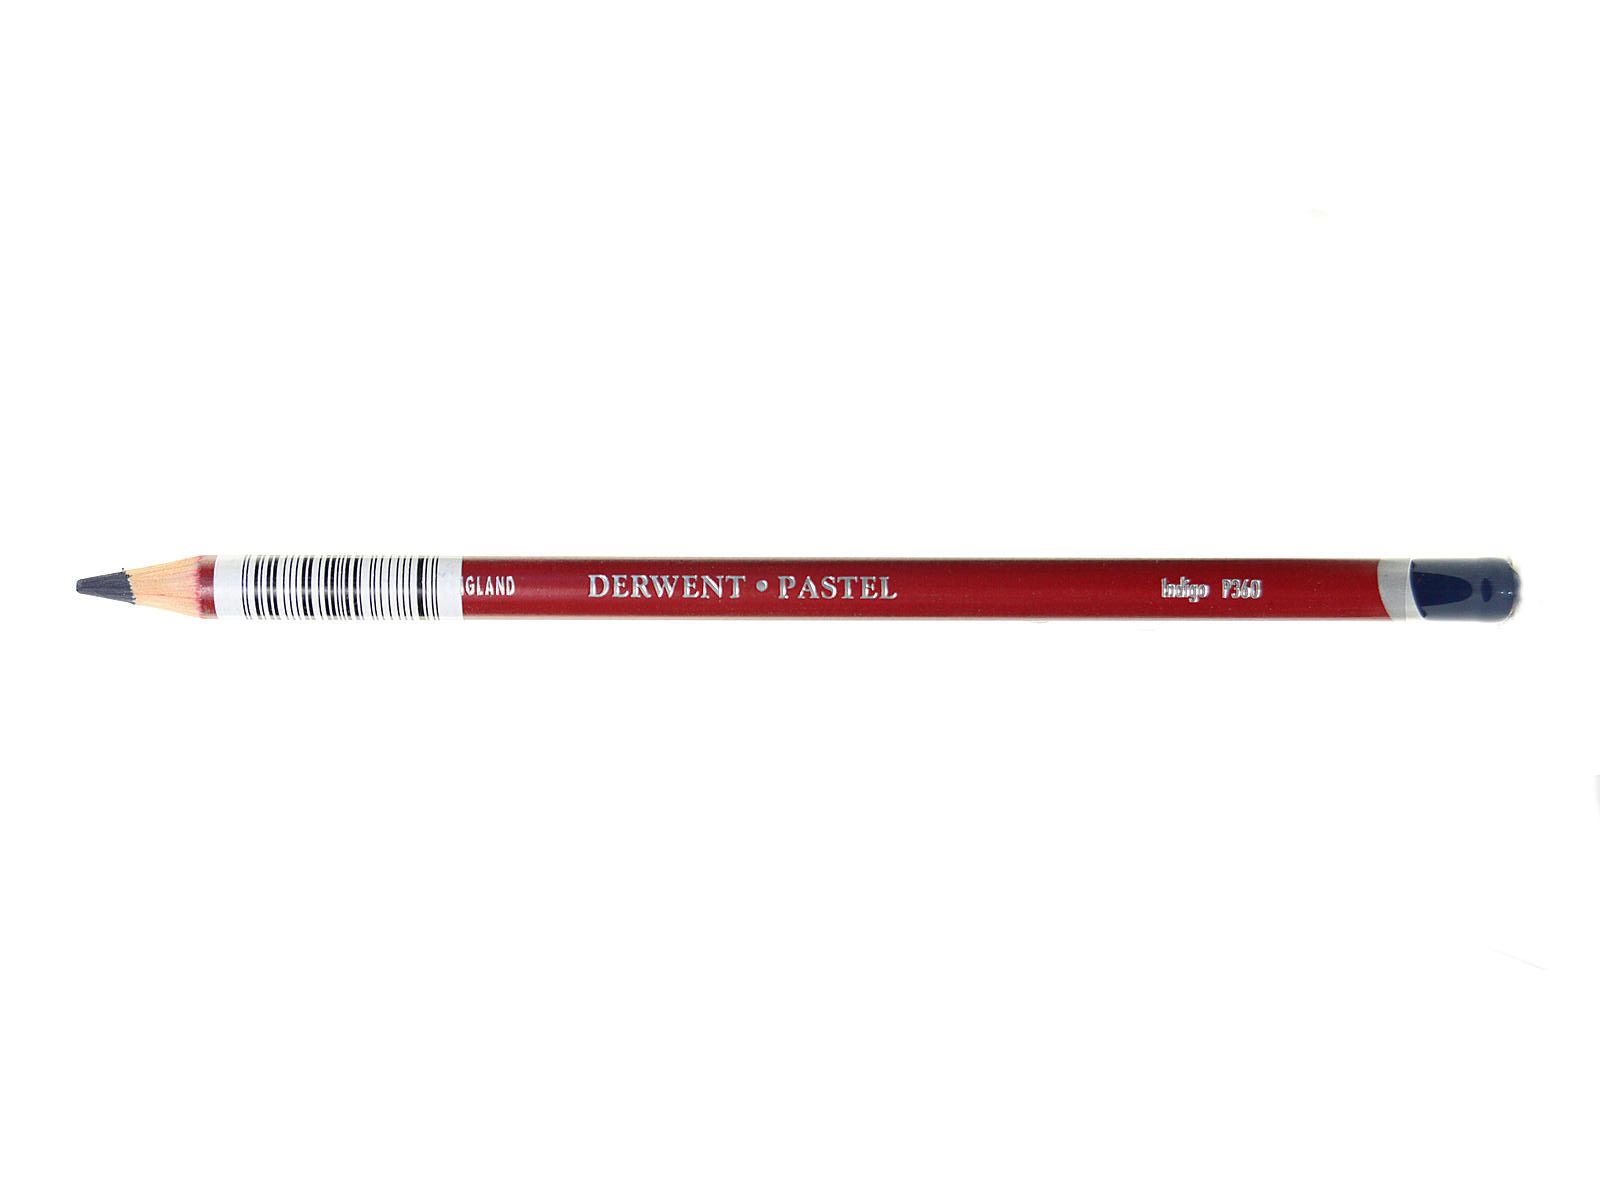 Derwent Pastel Pencil - P360 Indigo